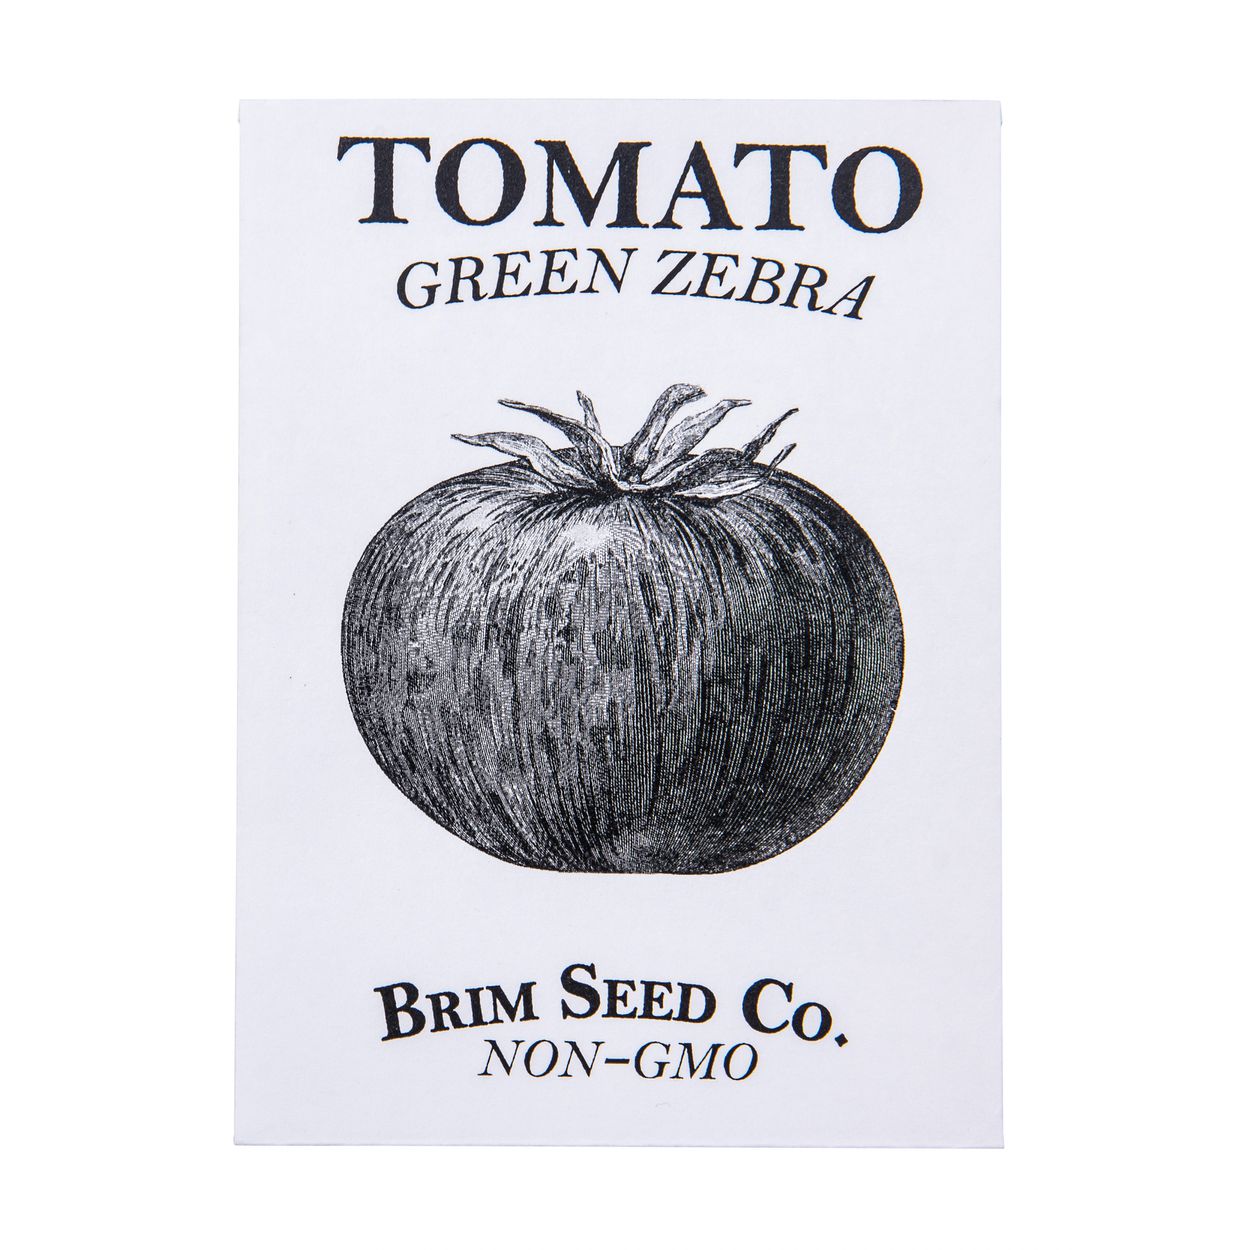 Brim Seed Co. - Green Zebra Tomato Seed